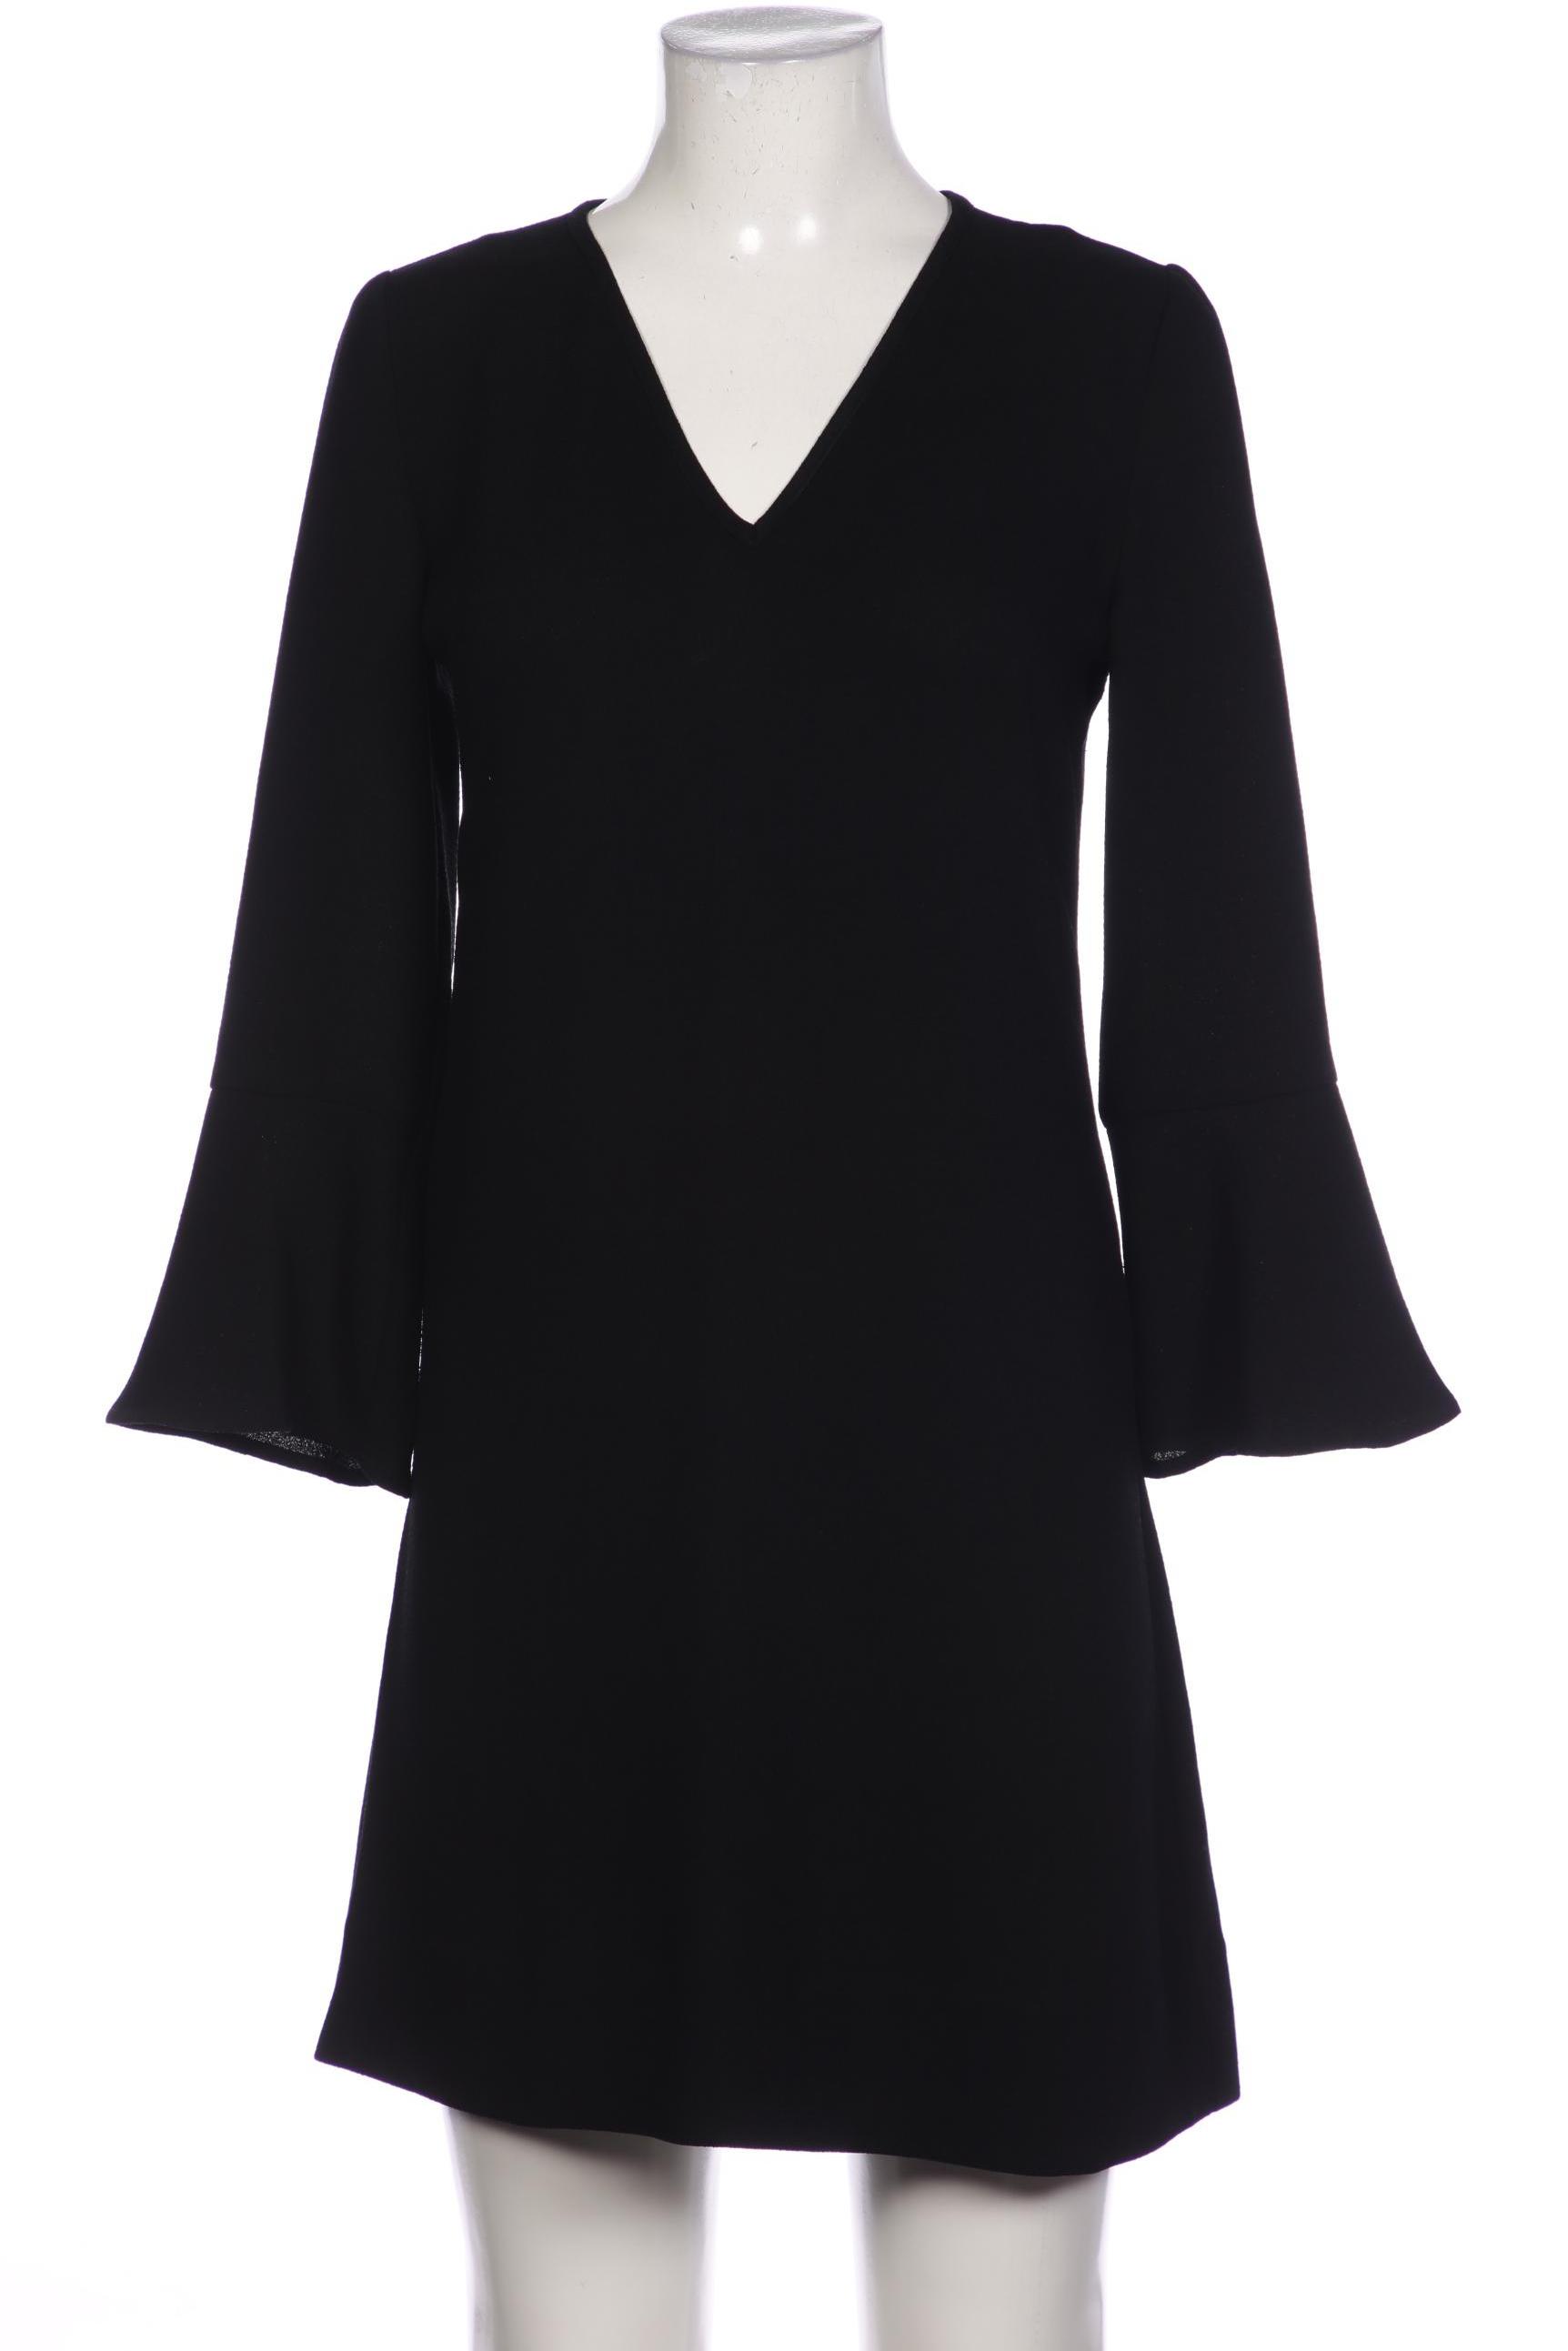 Essentiel Antwerp Damen Kleid, schwarz, Gr. 36 von Essentiel Antwerp